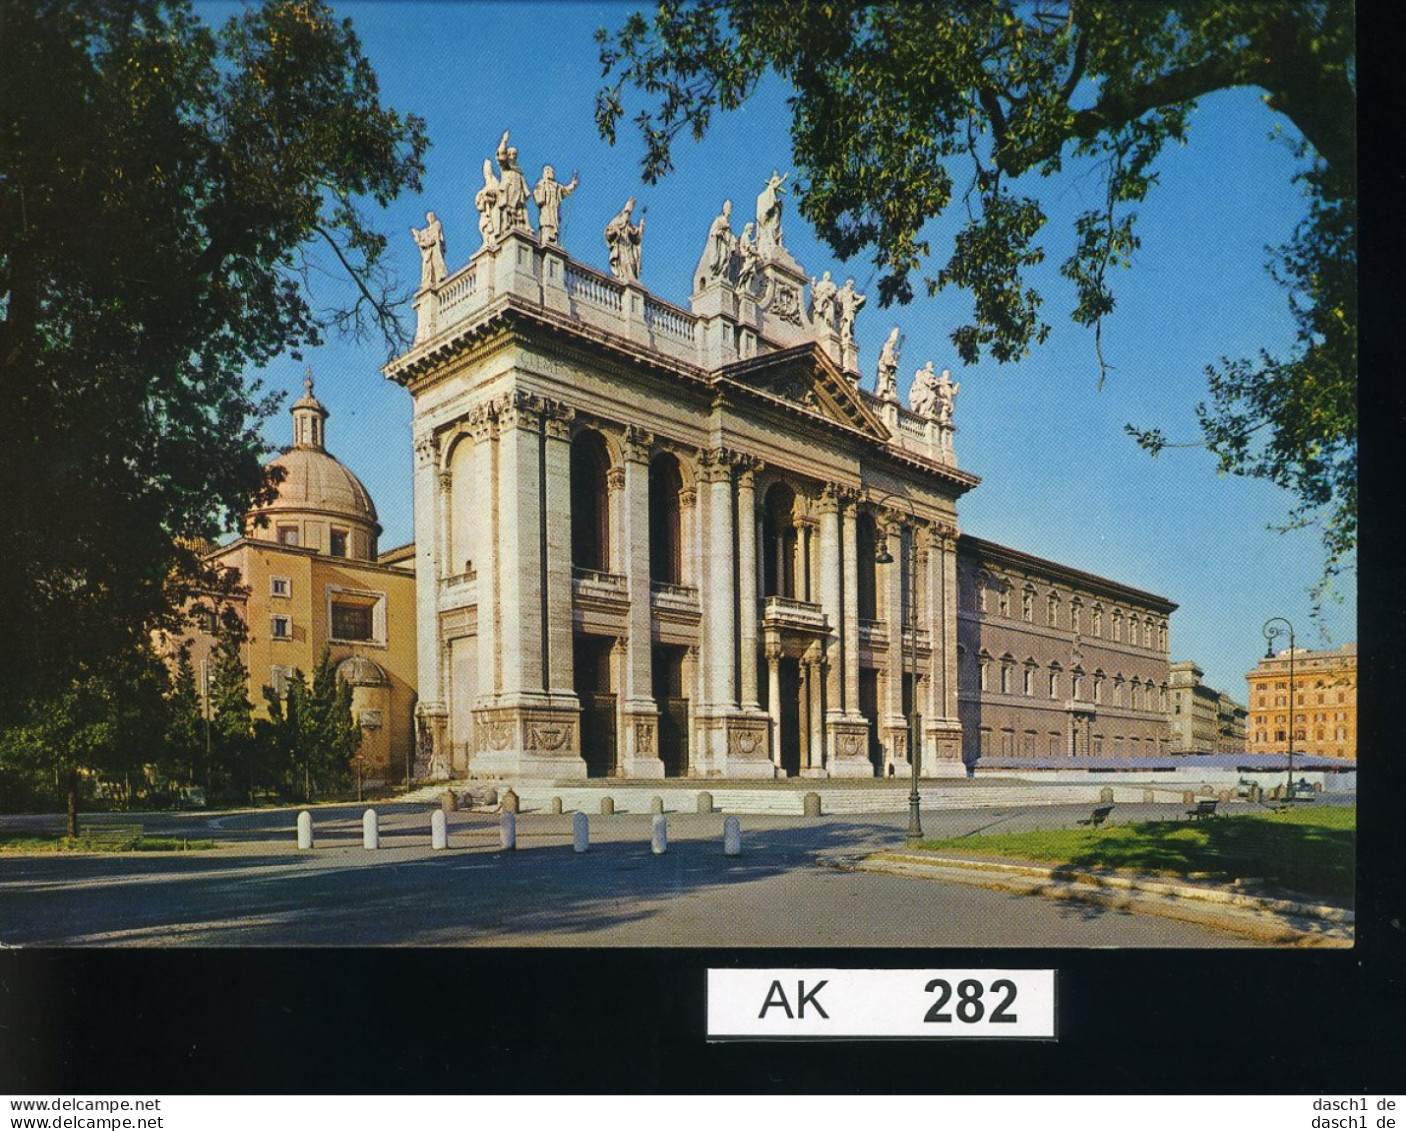 AK282, AK Nicht Gelaufen, Hl. Johann Lateranus Hauptkirchen Um 1965, Rom, Italien - Kirchen